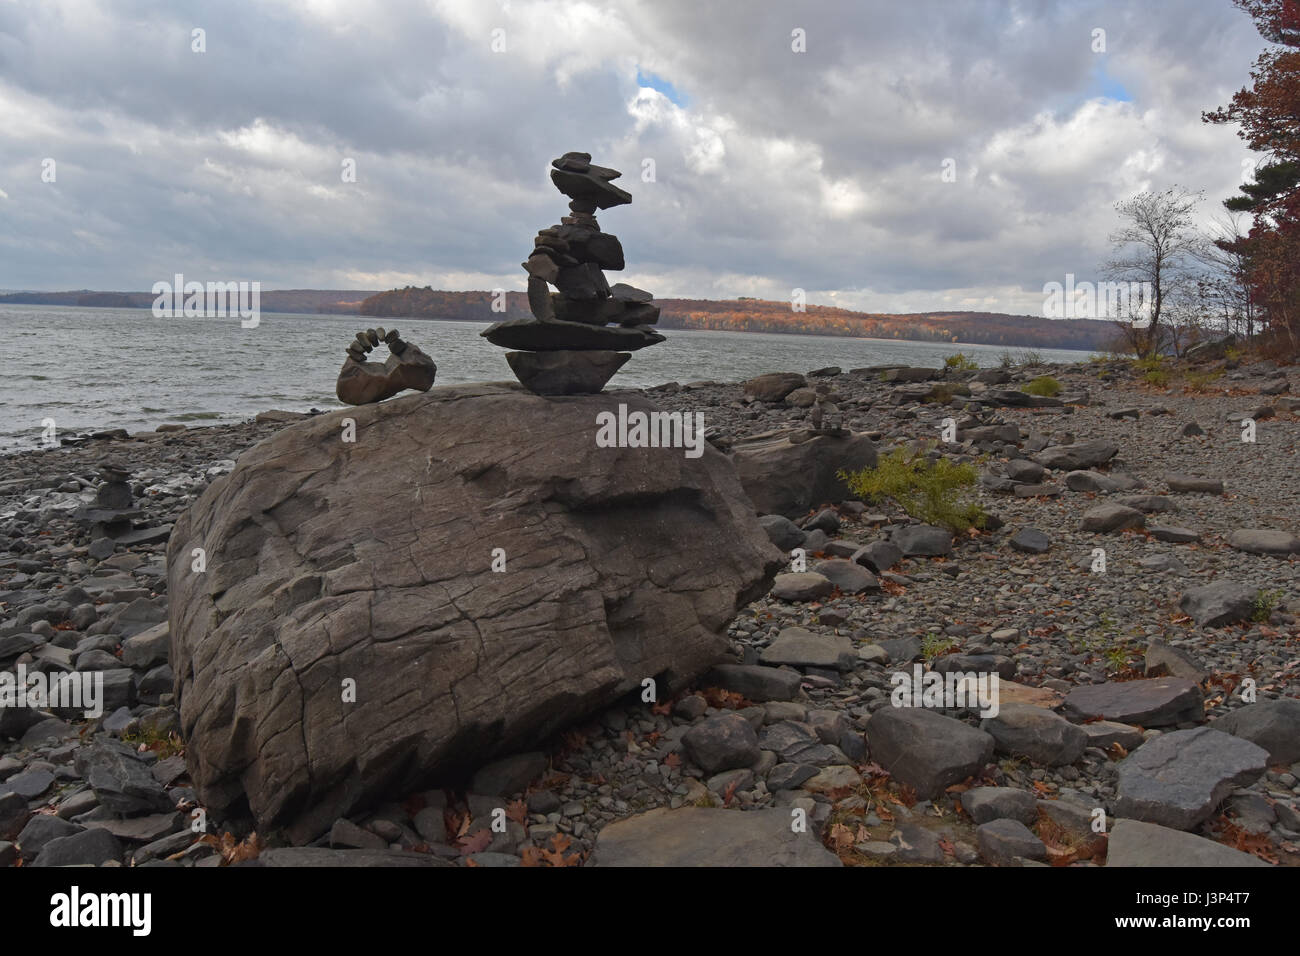 Sculptures en pierre sur plage rocheuse avec moody sky over lac lumineux Banque D'Images